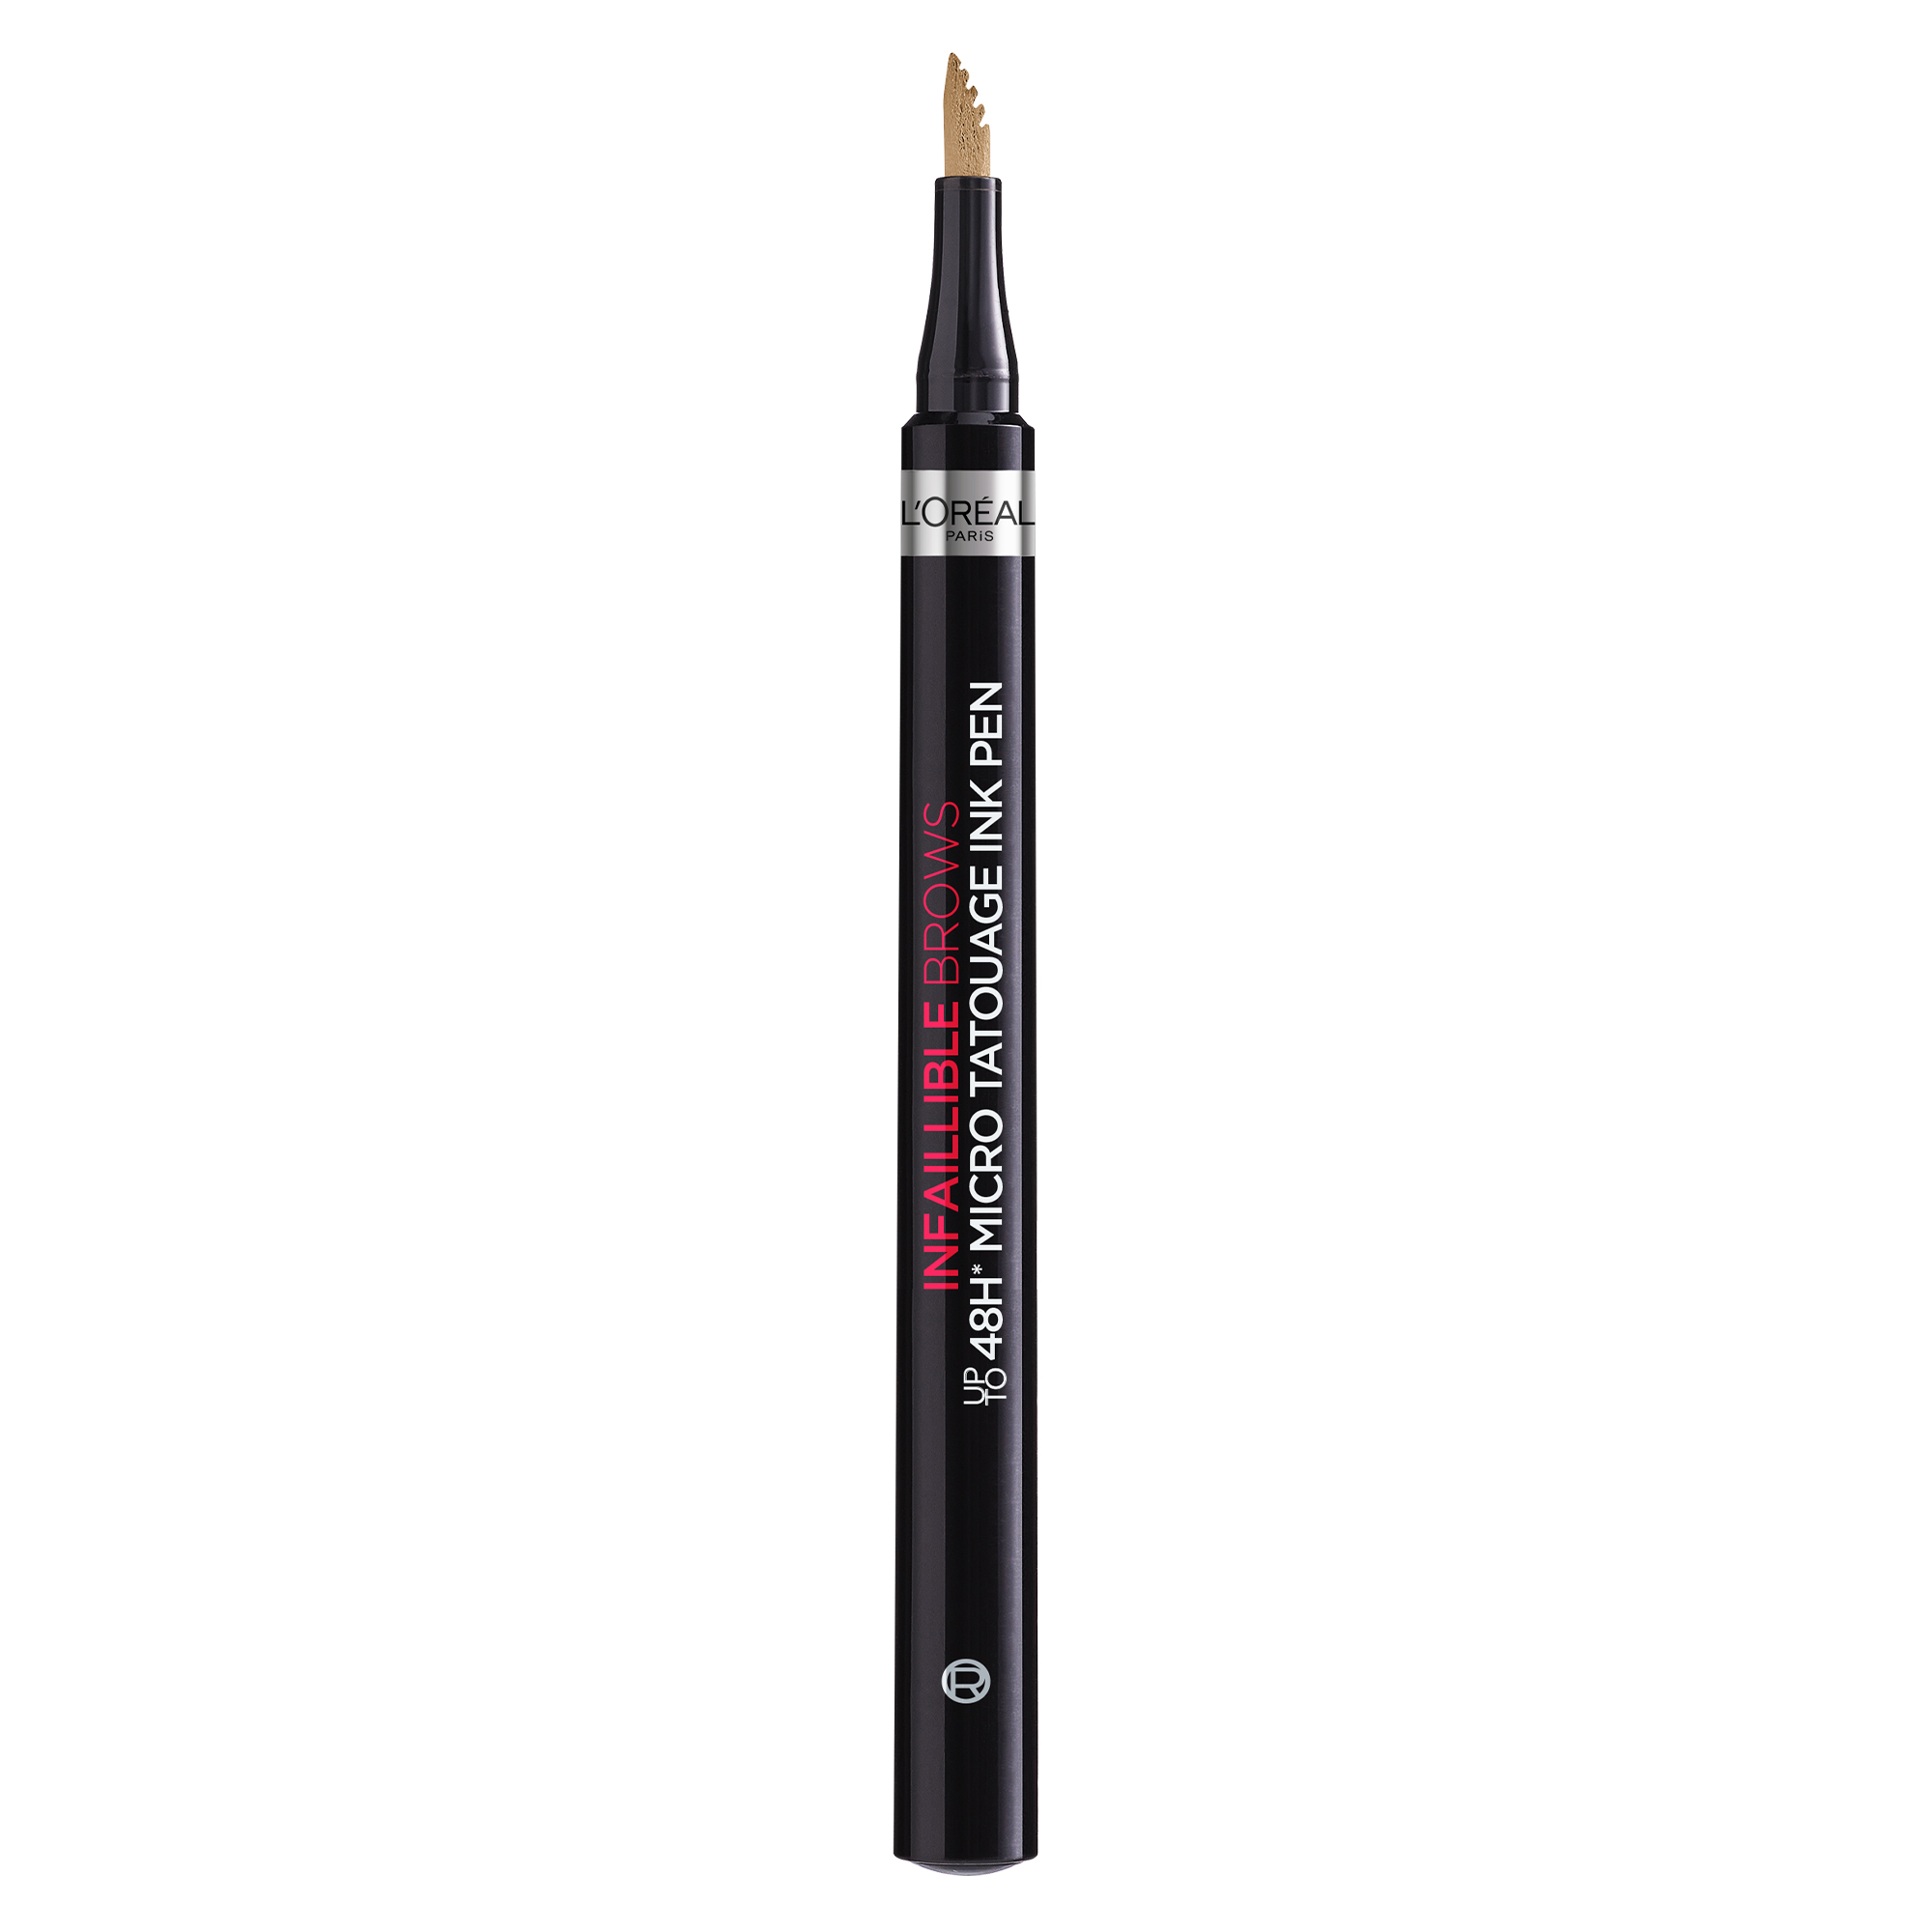 Creion pentru sprancene cu efect de micropigmentare Infaillible Brows 48H Micro Tatouage, 101 Blonde, 6 g, Loreal Paris